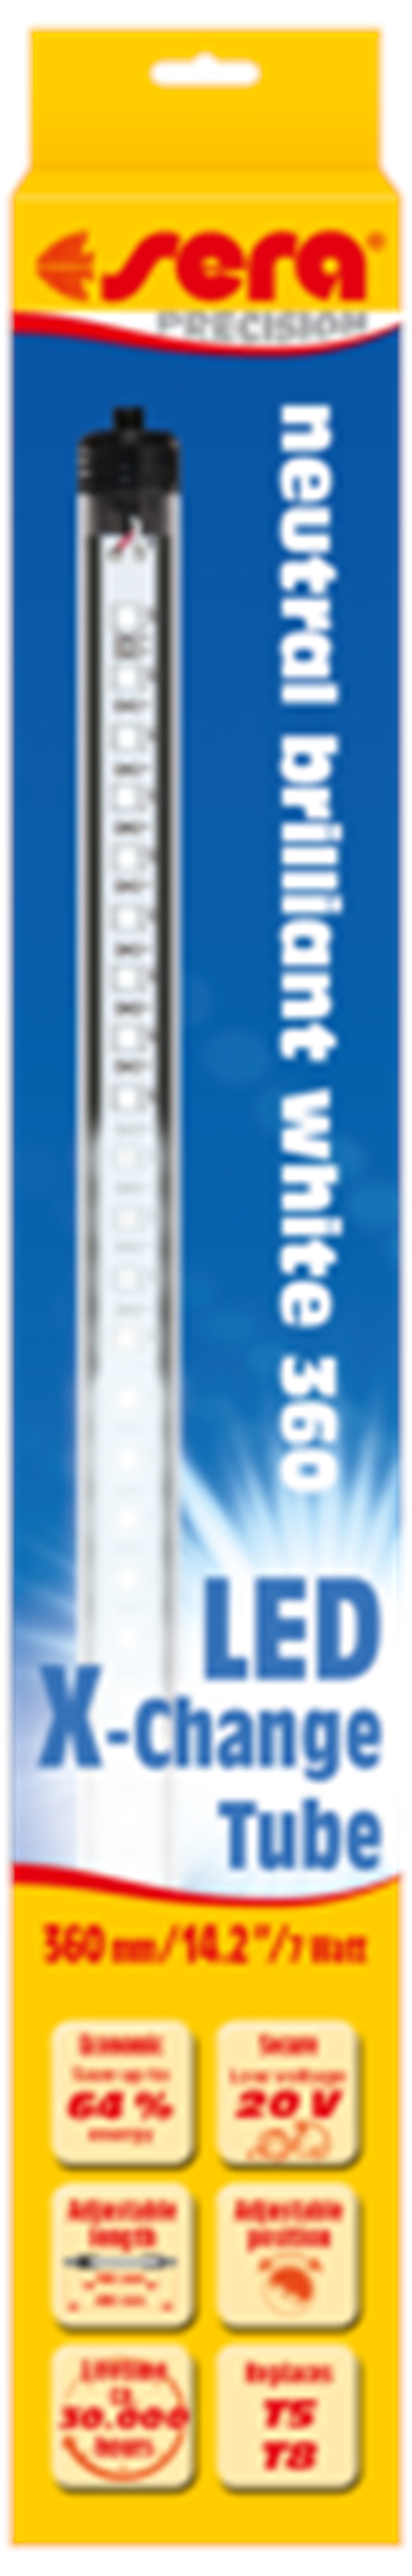 sera LED neutral brilliant white 965 mm / 14,8 W